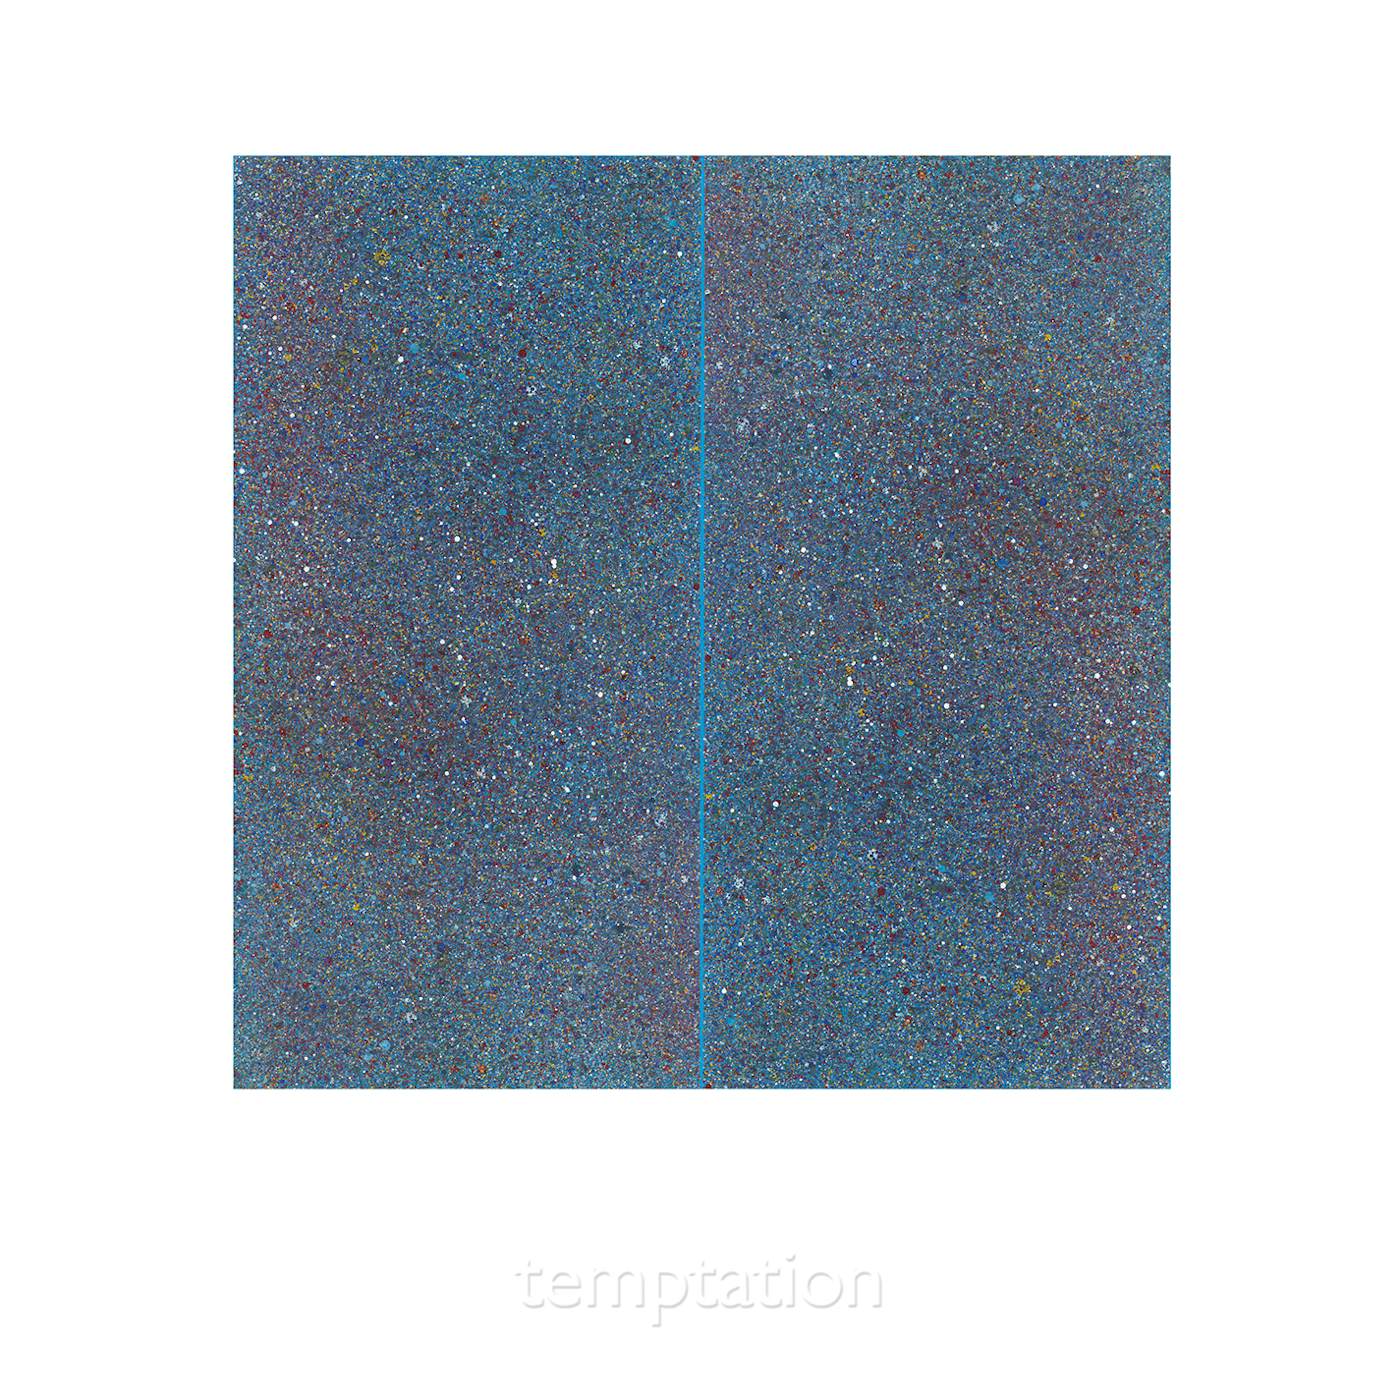 New Order Temptation Vinyl Record